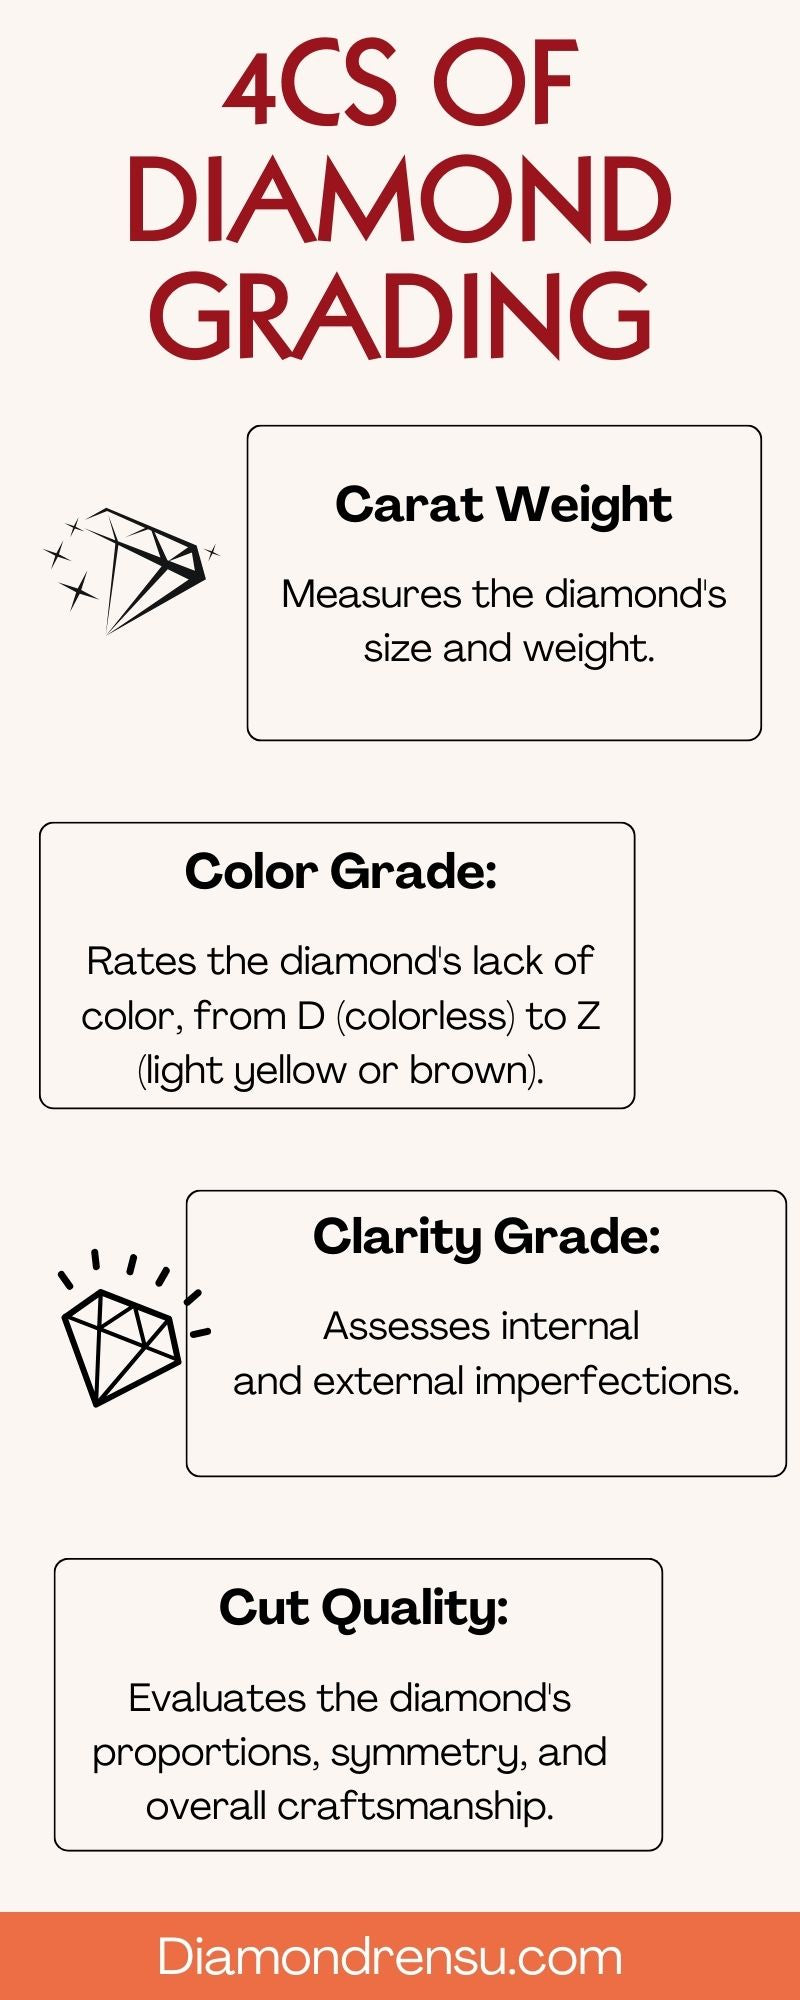 4cs of Diamond grading infographic